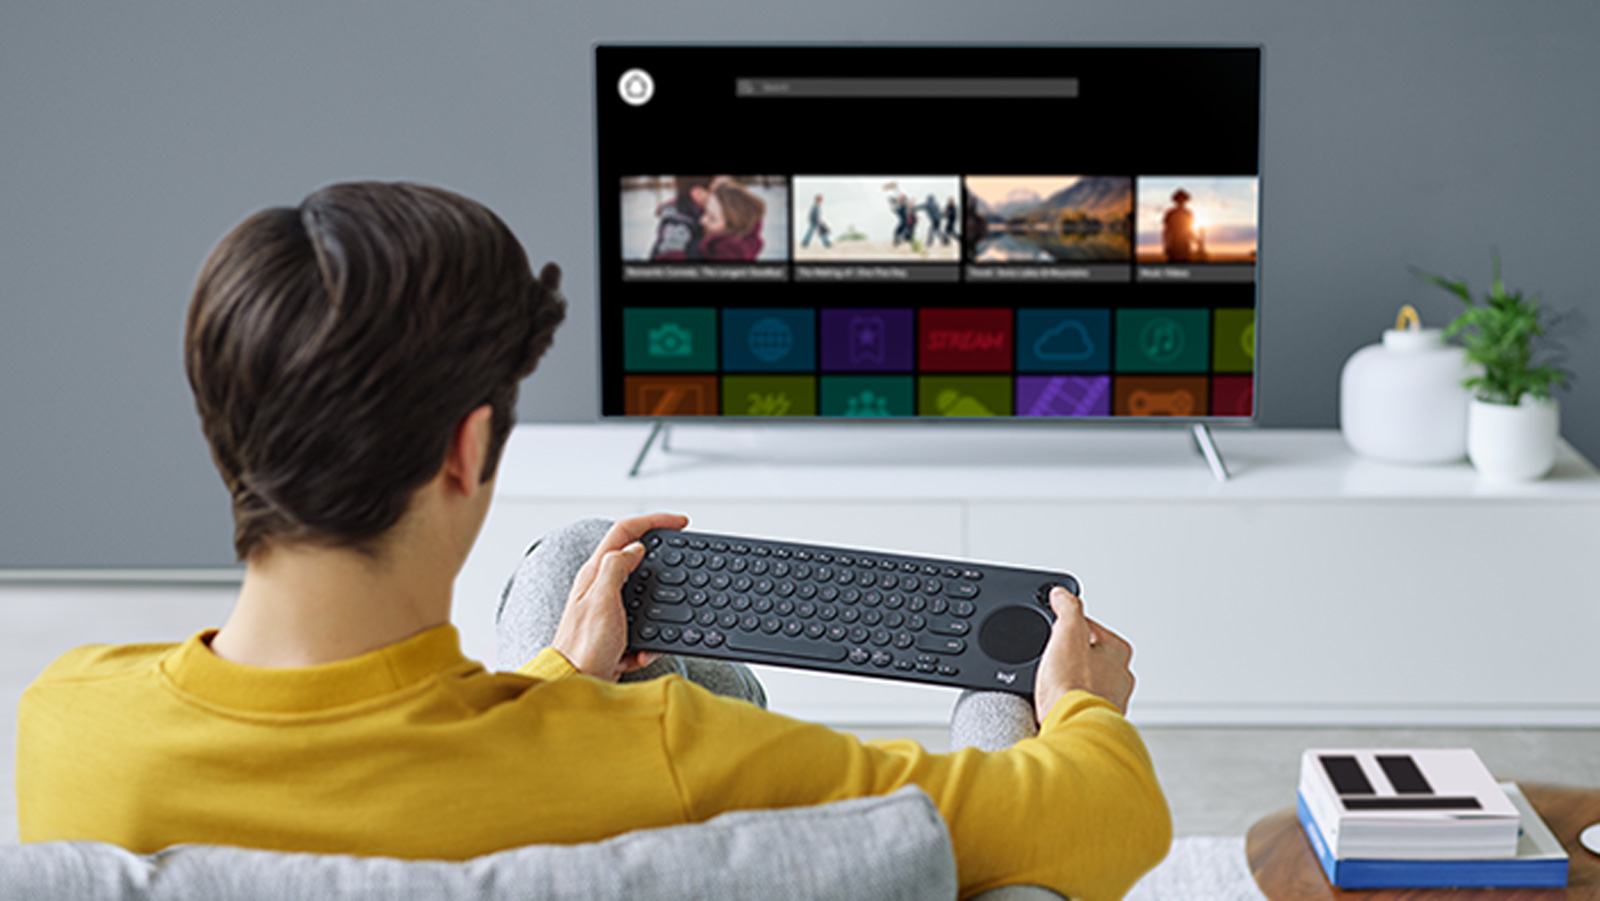 Logitech-media keyboard-smart TV